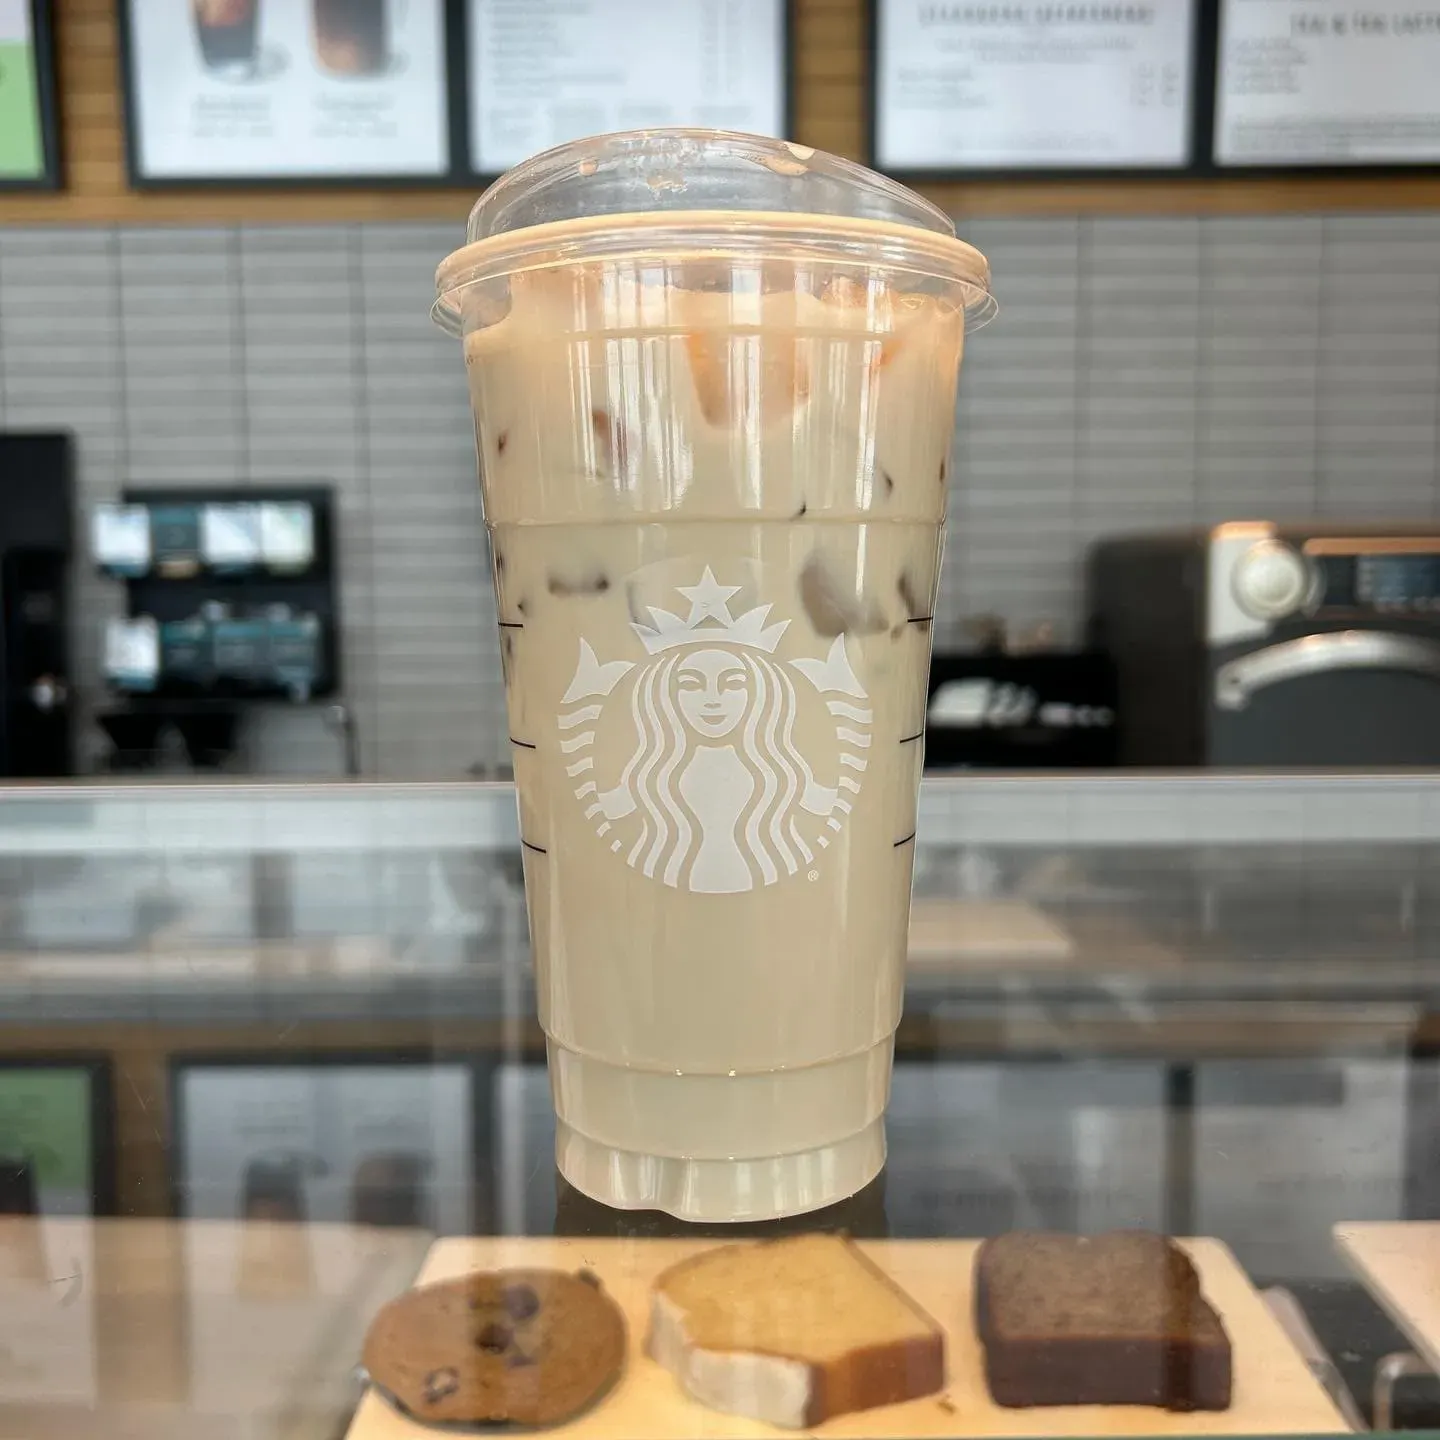 Starbucks Iced Chai Tea Latte